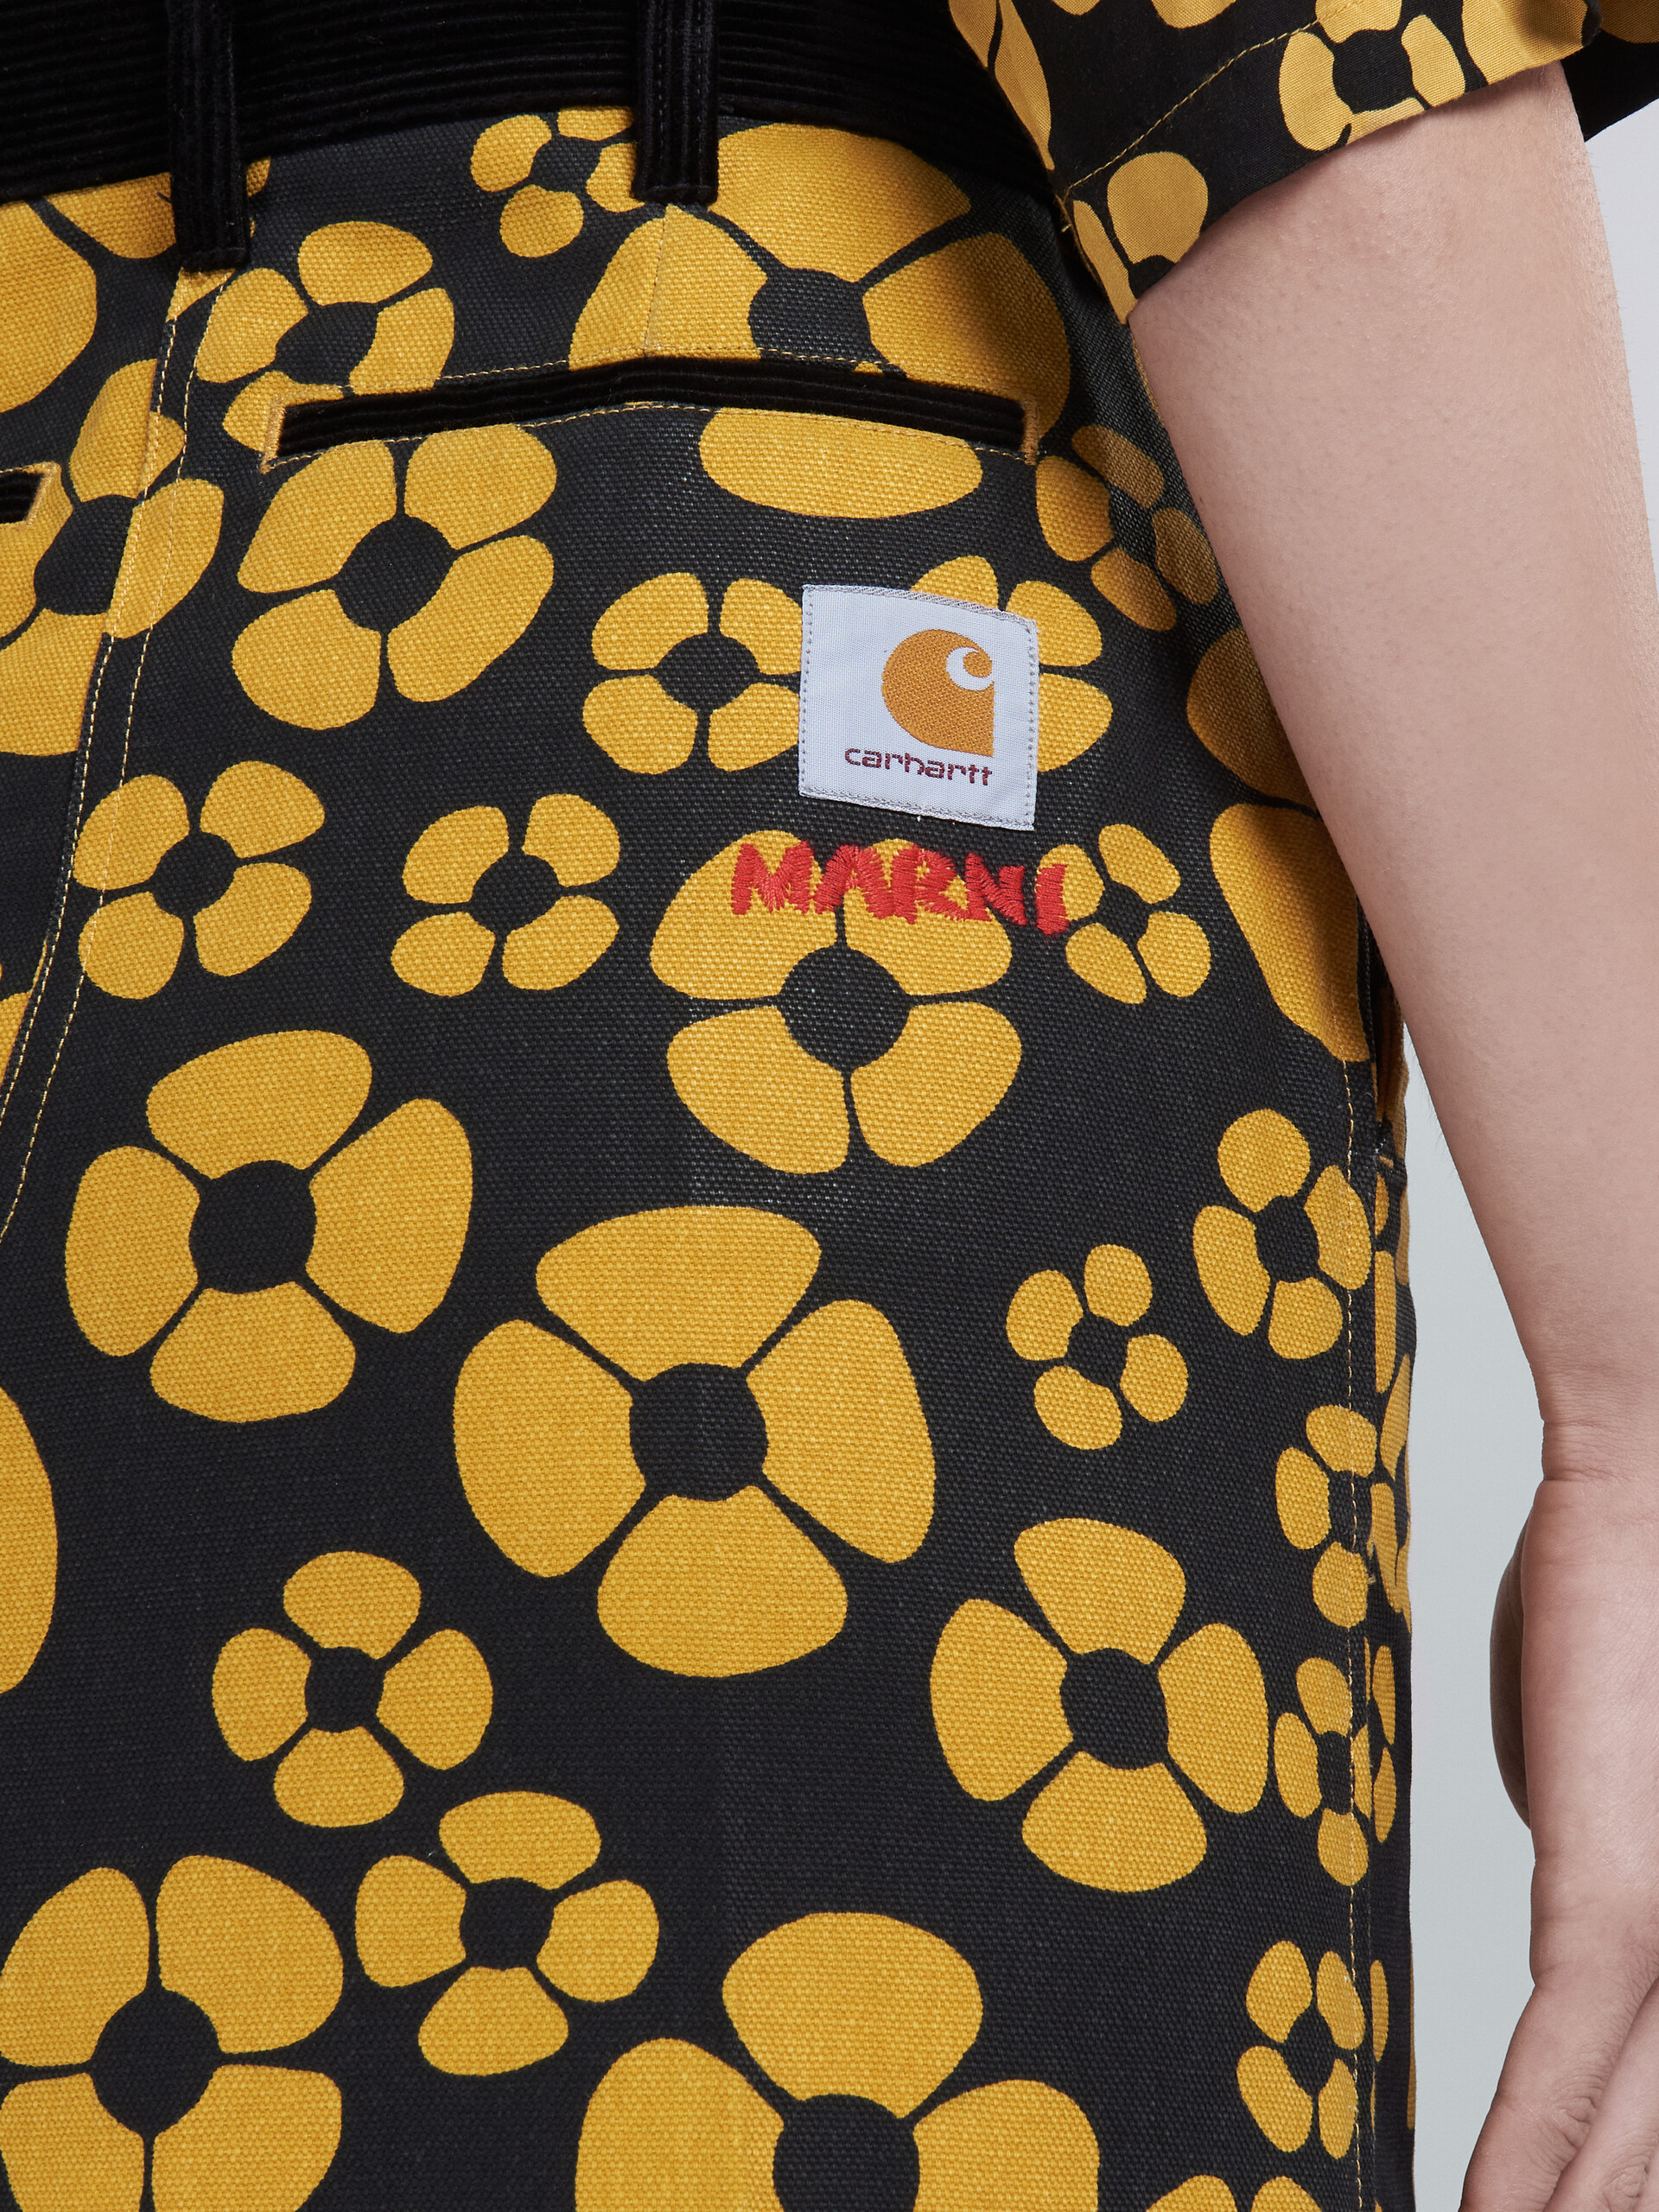 MARNI x CARHARTT WIP - yellow midi skirt - Skirts - Image 4